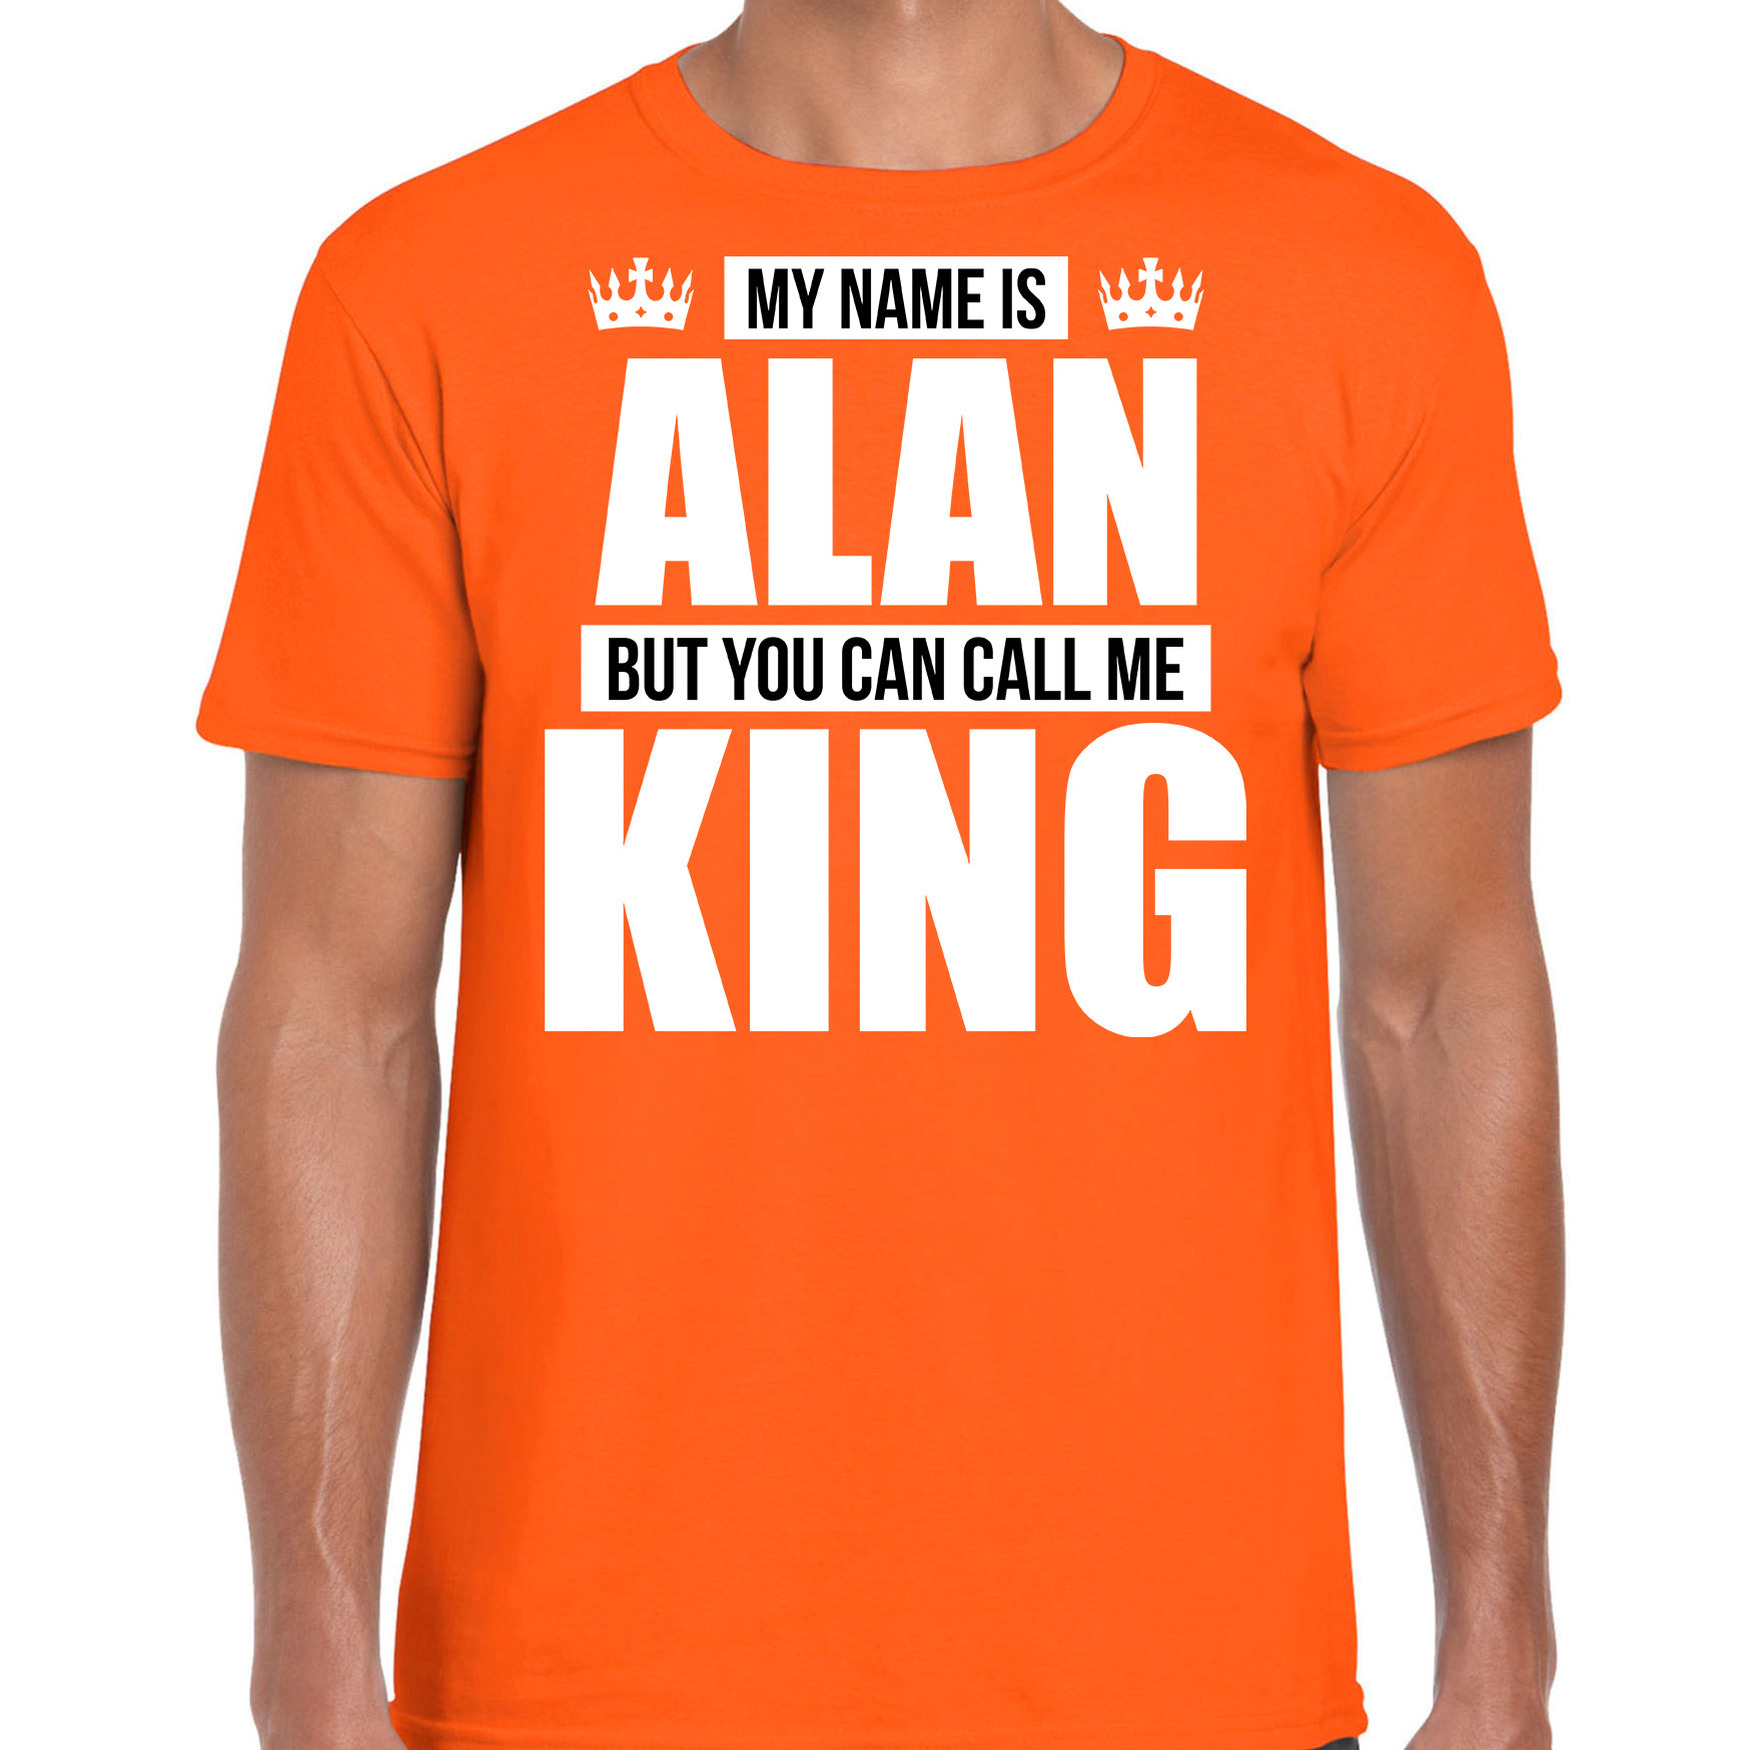 Naam My name is Alan but you can call me King shirt oranje cadeau shirt